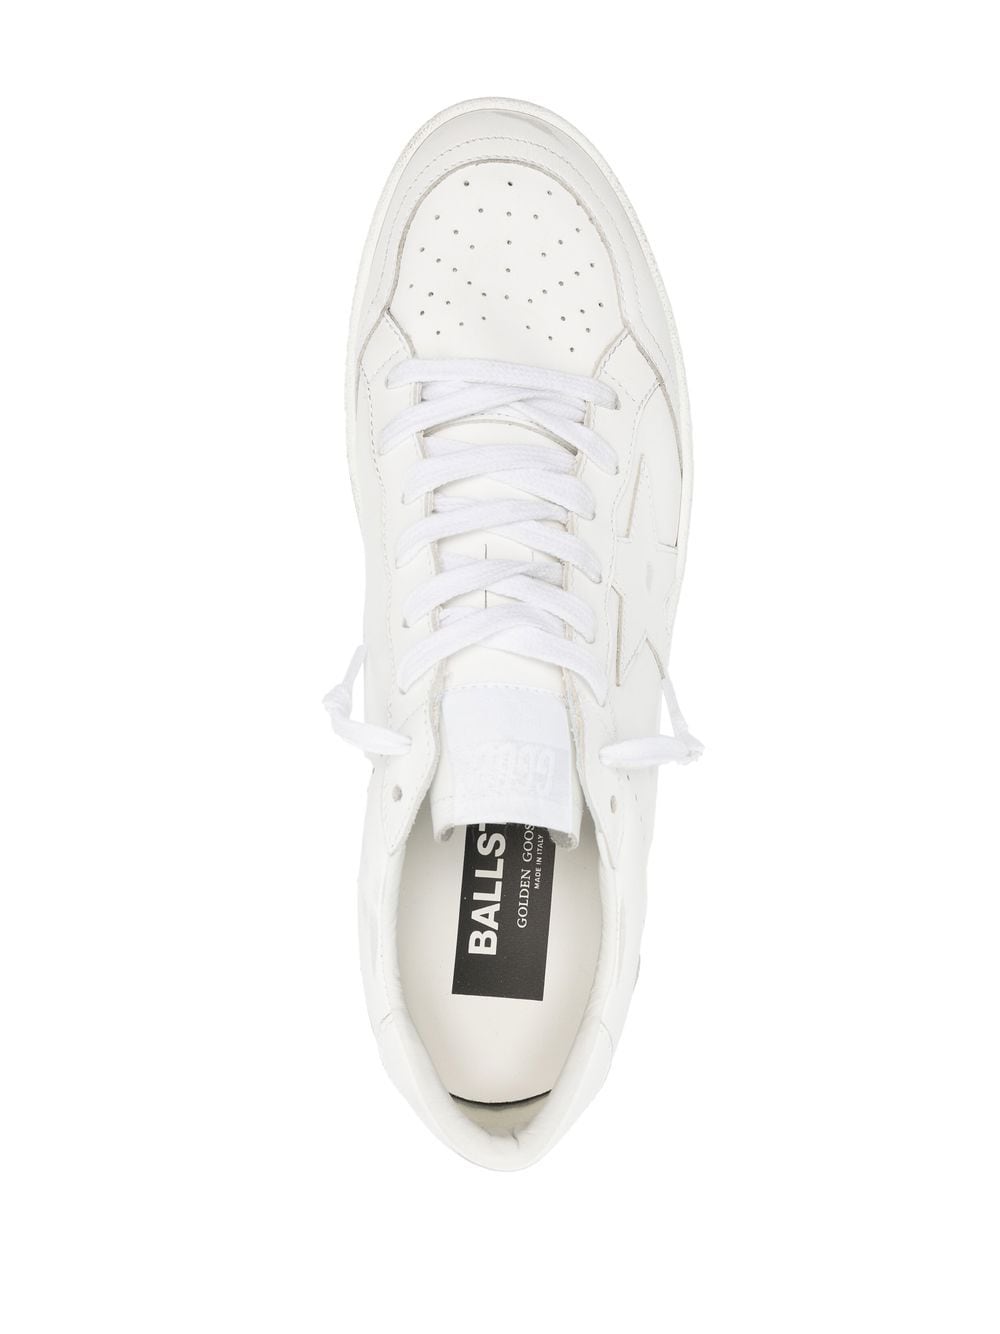 Ballstar sneaker in white leather